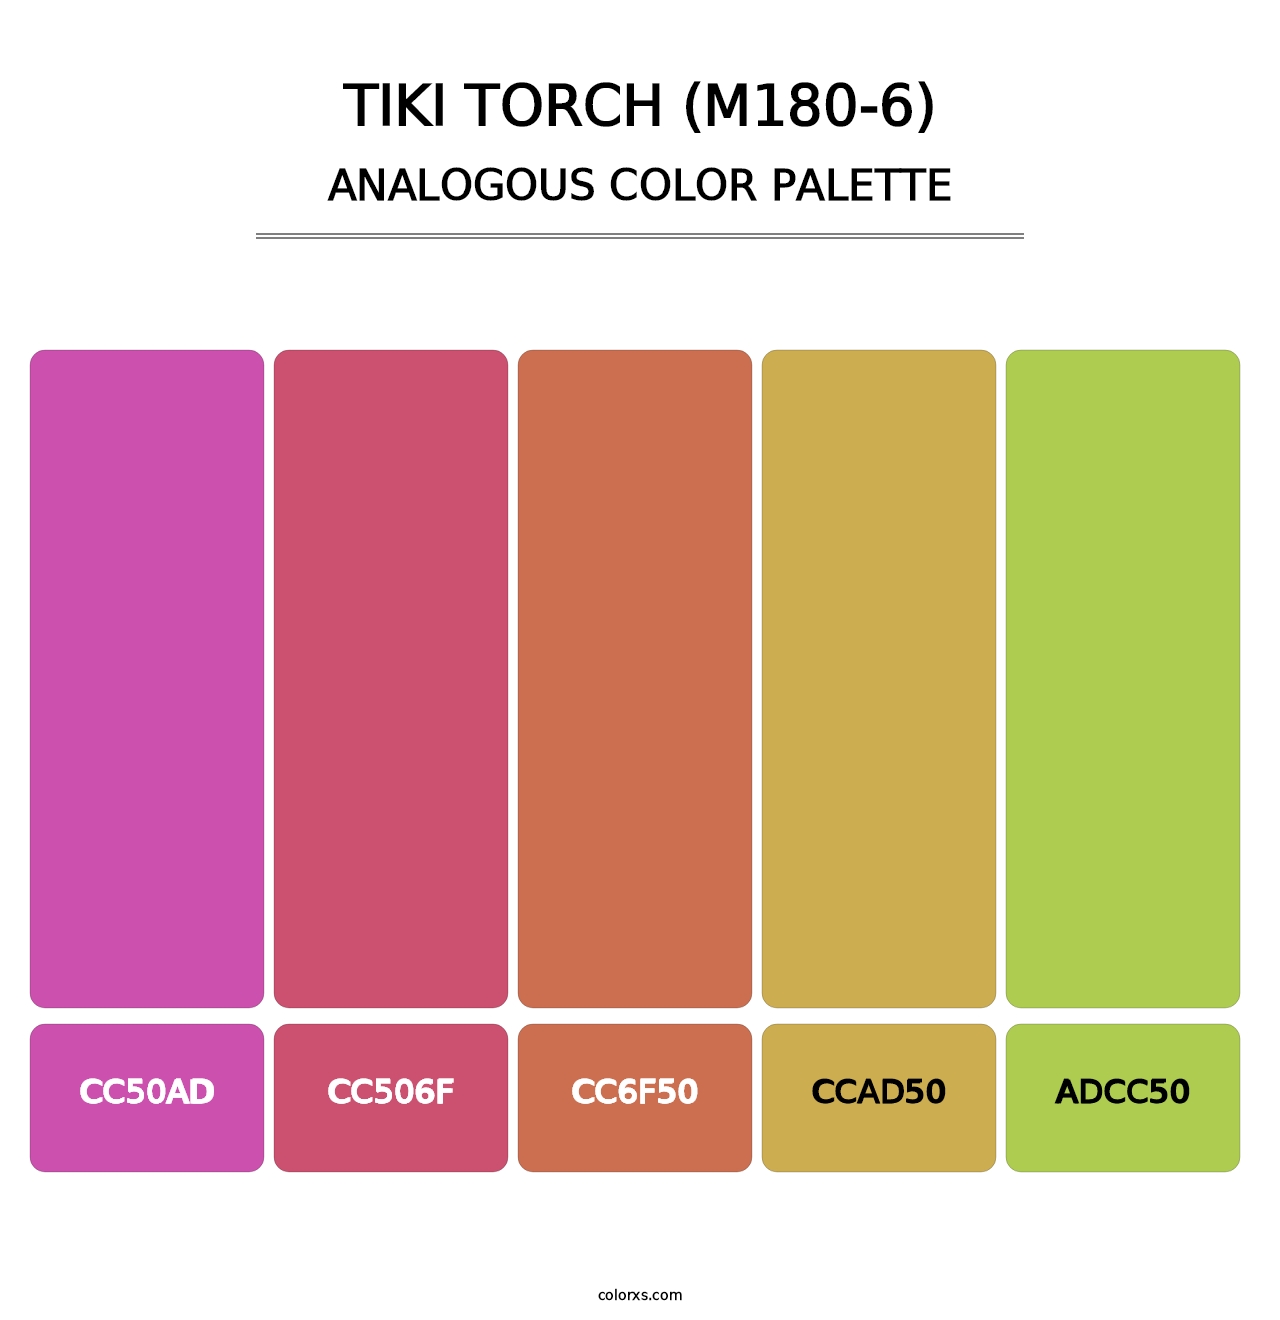 Tiki Torch (M180-6) - Analogous Color Palette